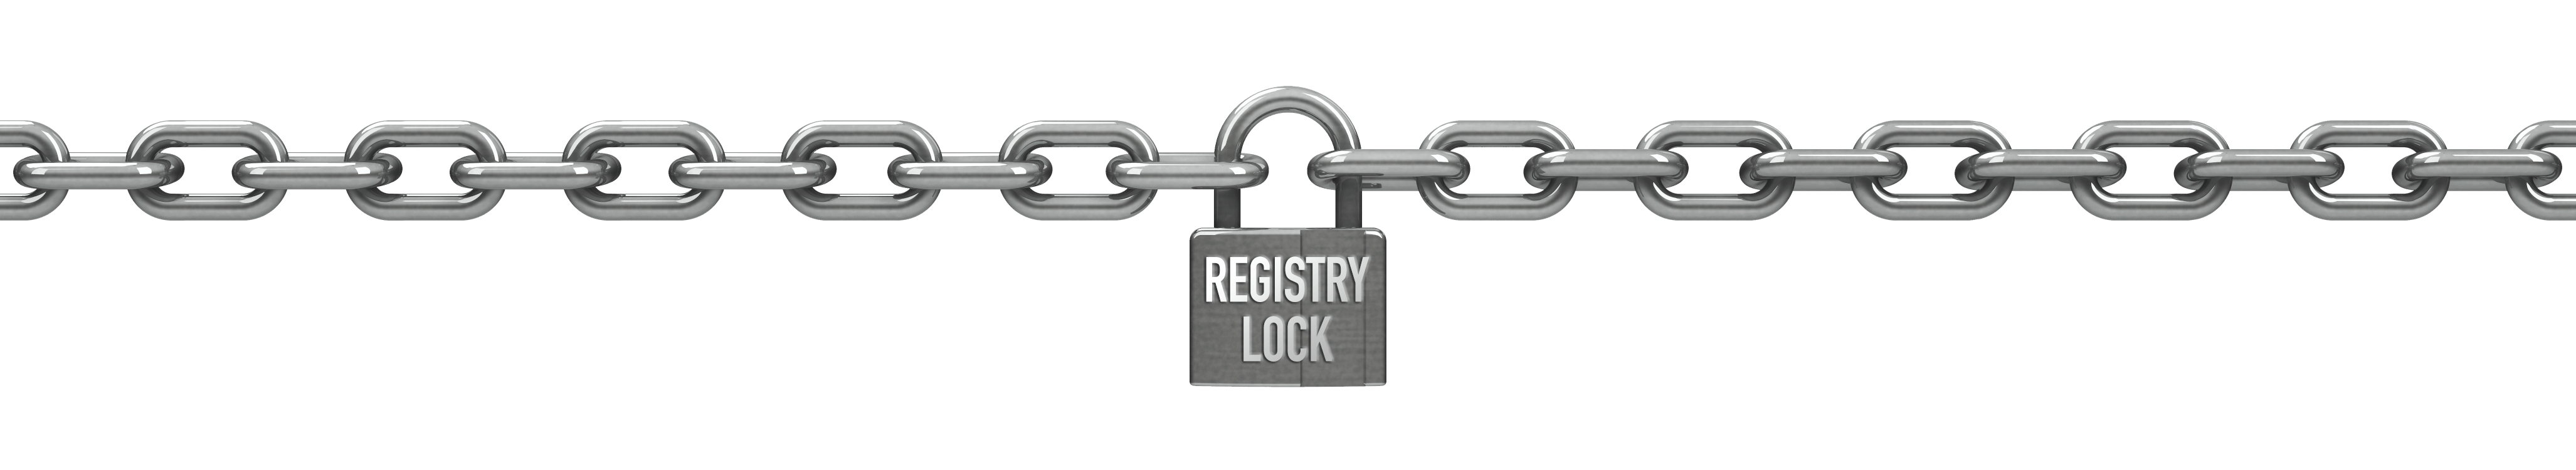 Registry Lock